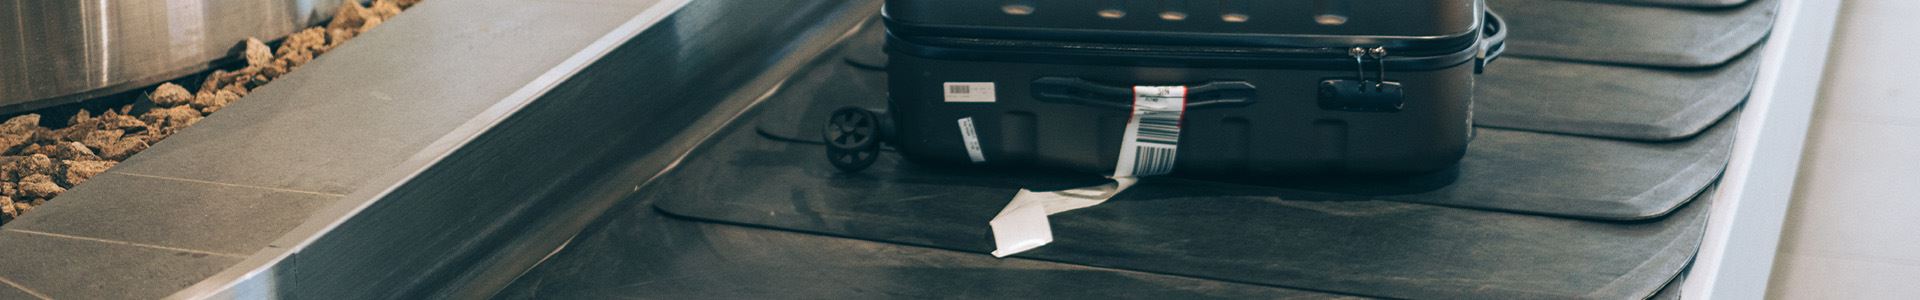 Image composée d'une valise noire rigide avec roulettes, poignées supérieure et latérale et d'une étiquette de bagage blanche sur la poignée latérale, posée sur un tapis roulant à bagages à l'aéroport.